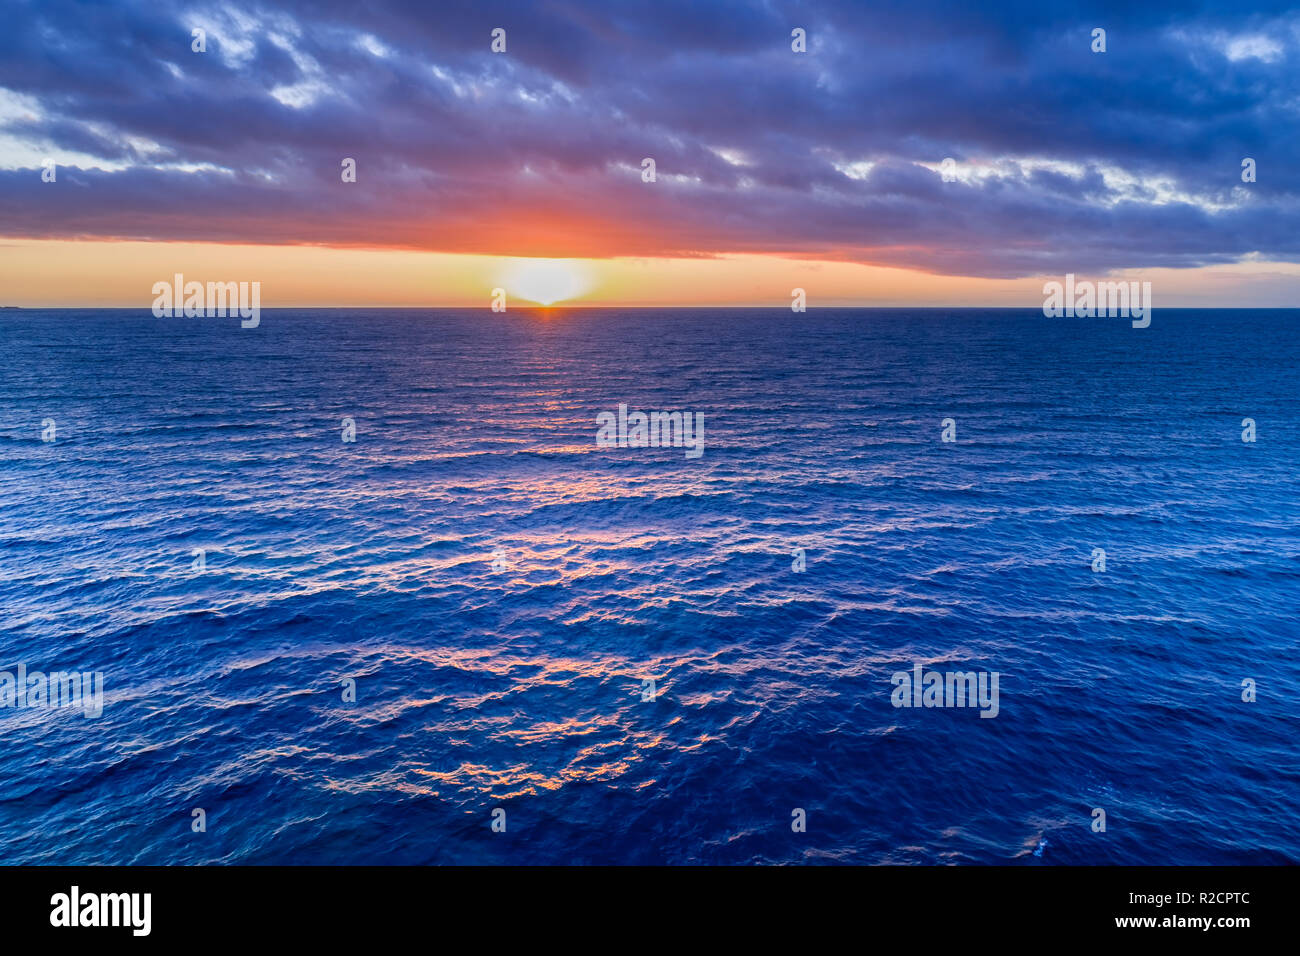 Nichts aber Sonnenuntergang über Wasser - Luftbild Stockfoto